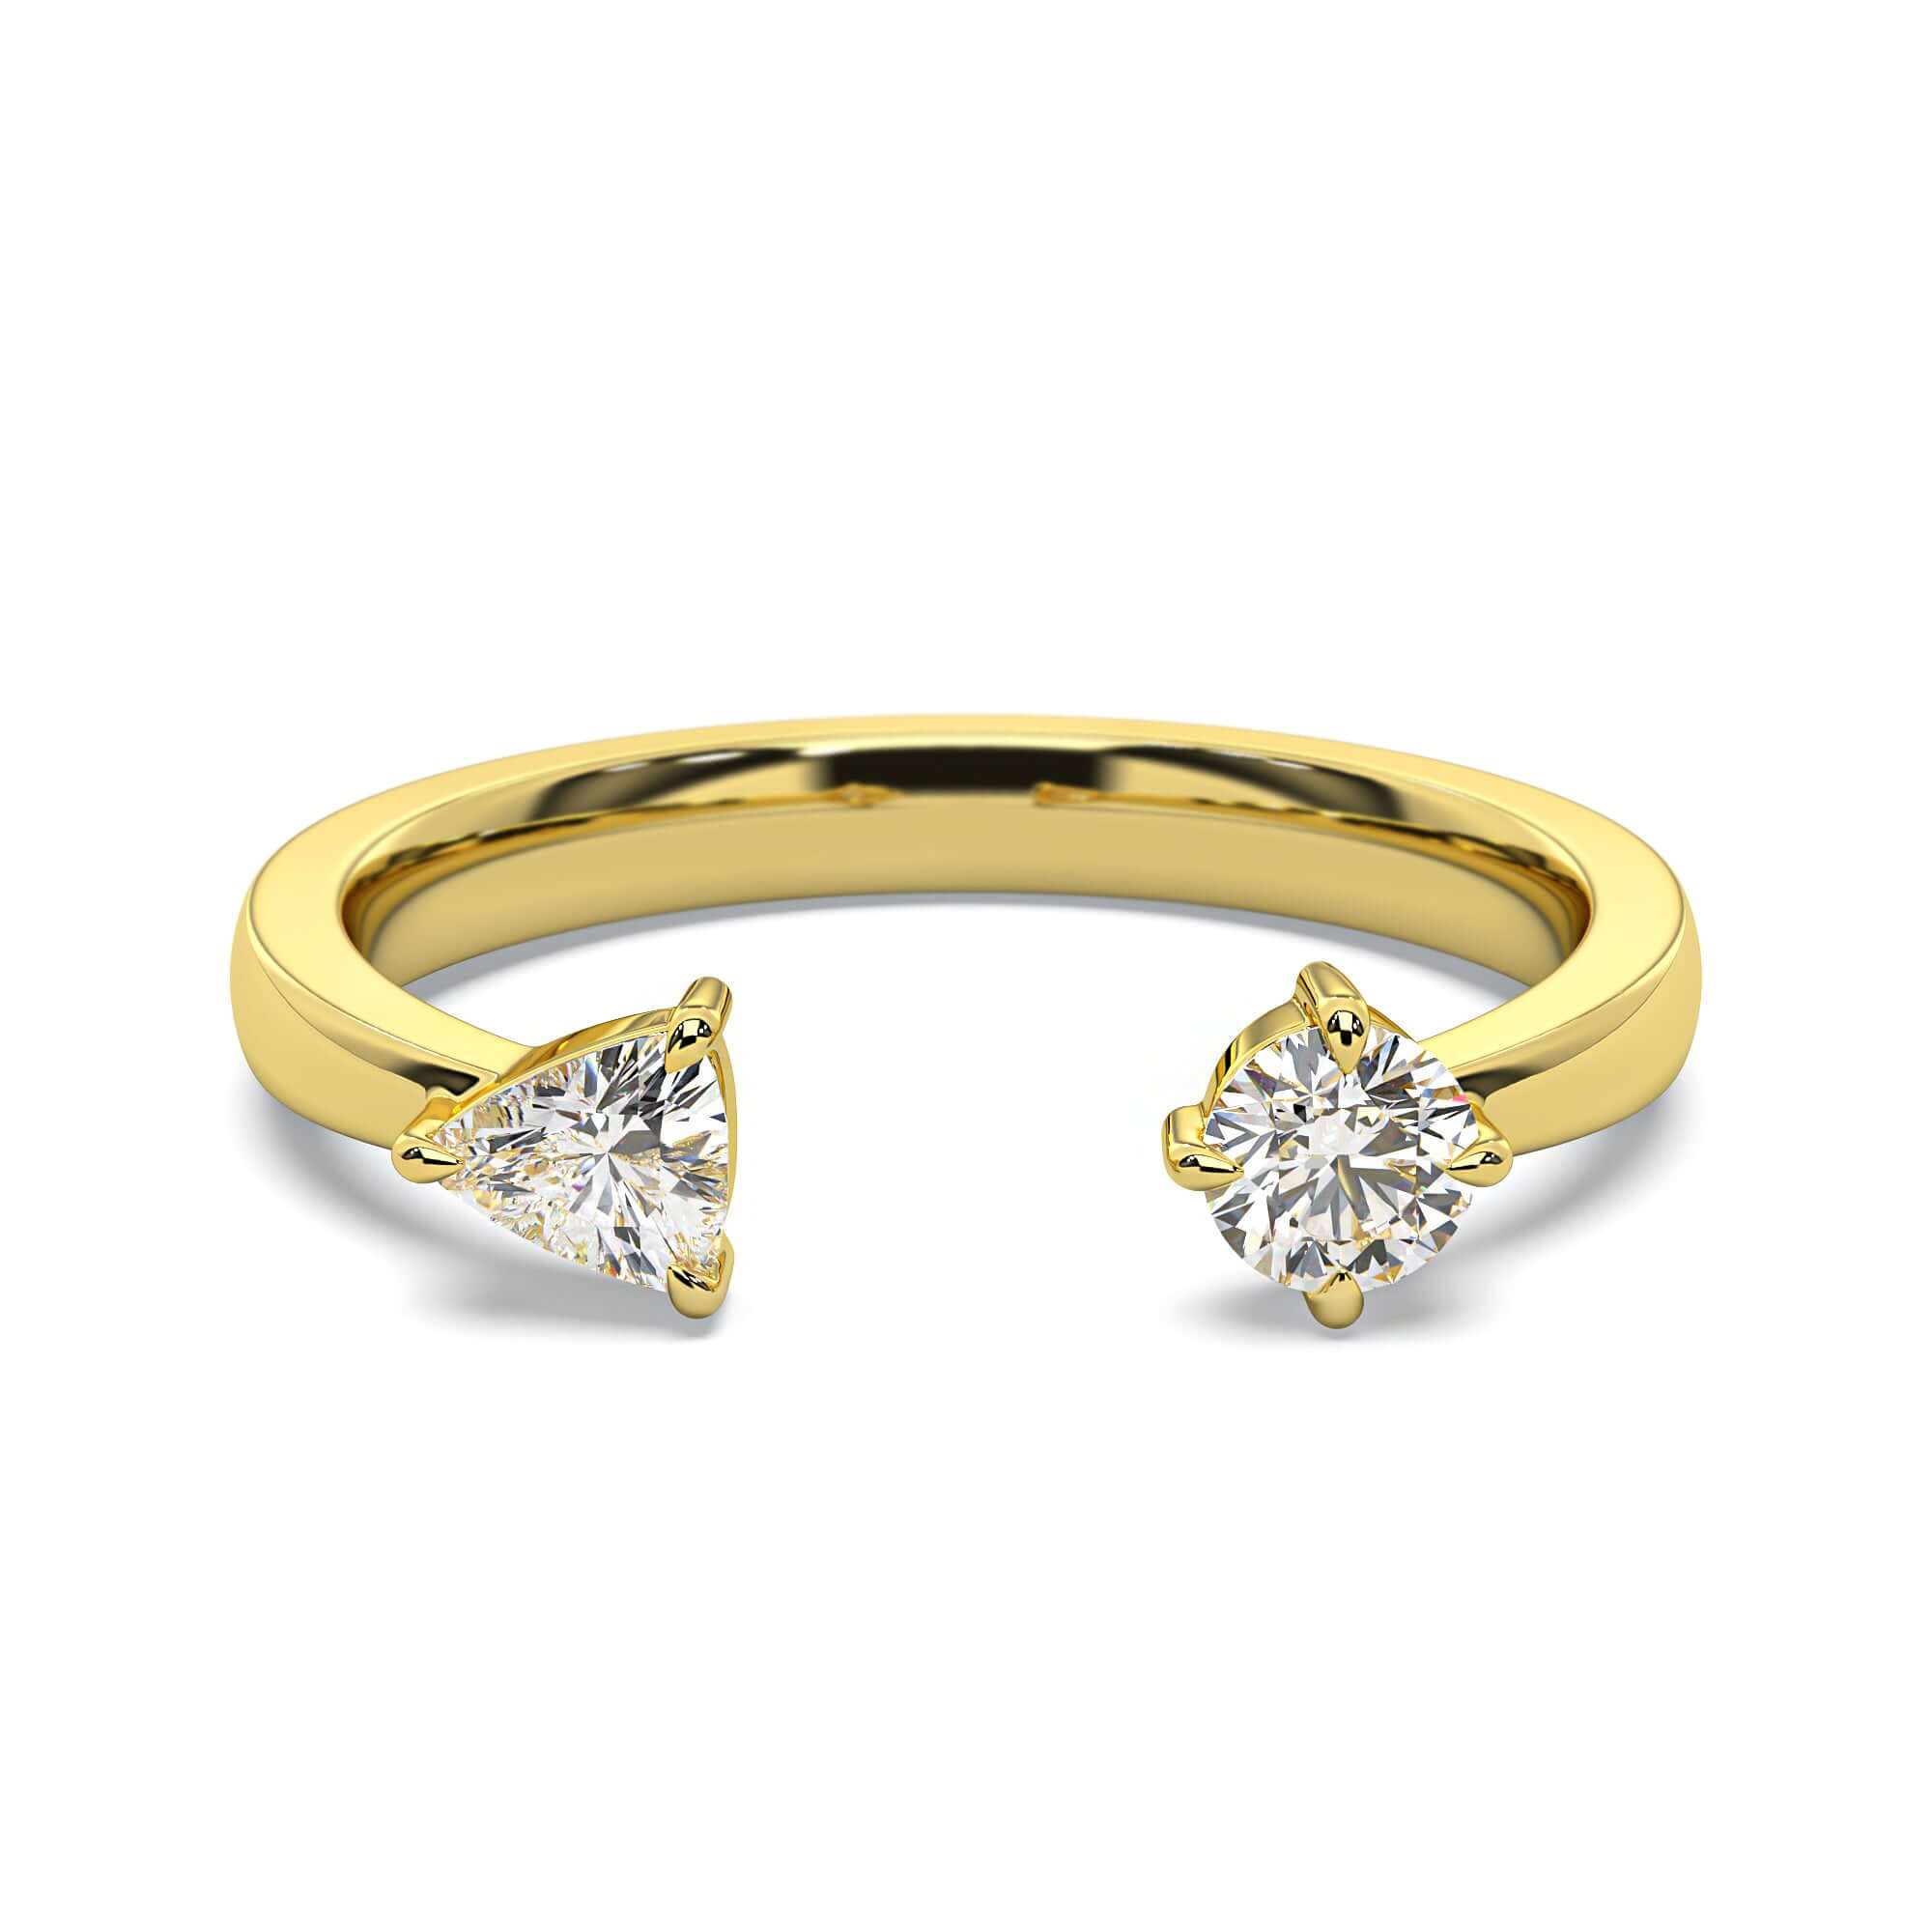 Petite Quinn - Round Brilliant & Trillion Diamond Engagement Ring